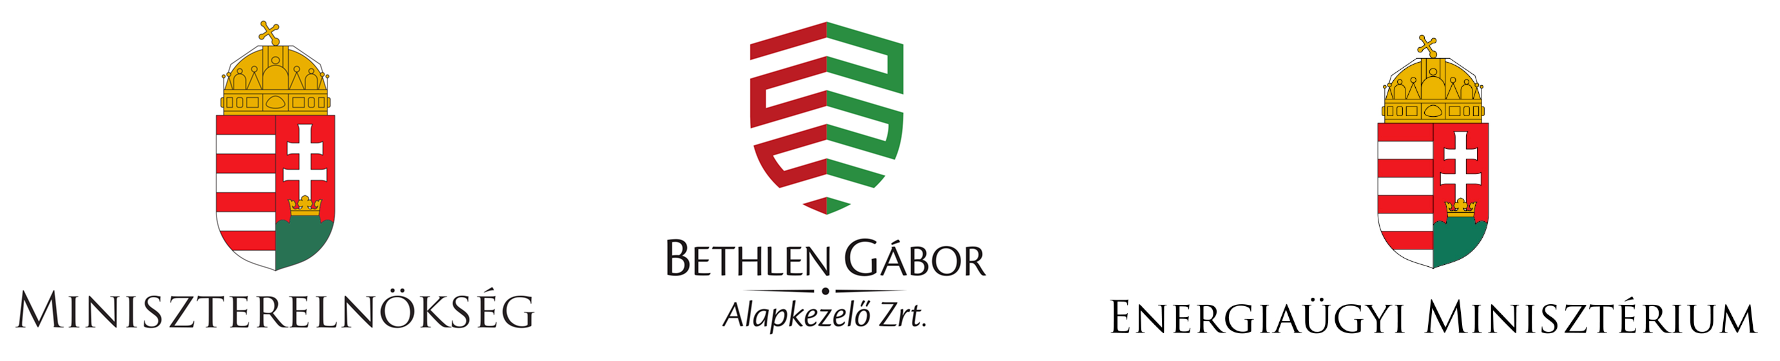 Bethlen Gábor Alapkezelő logo